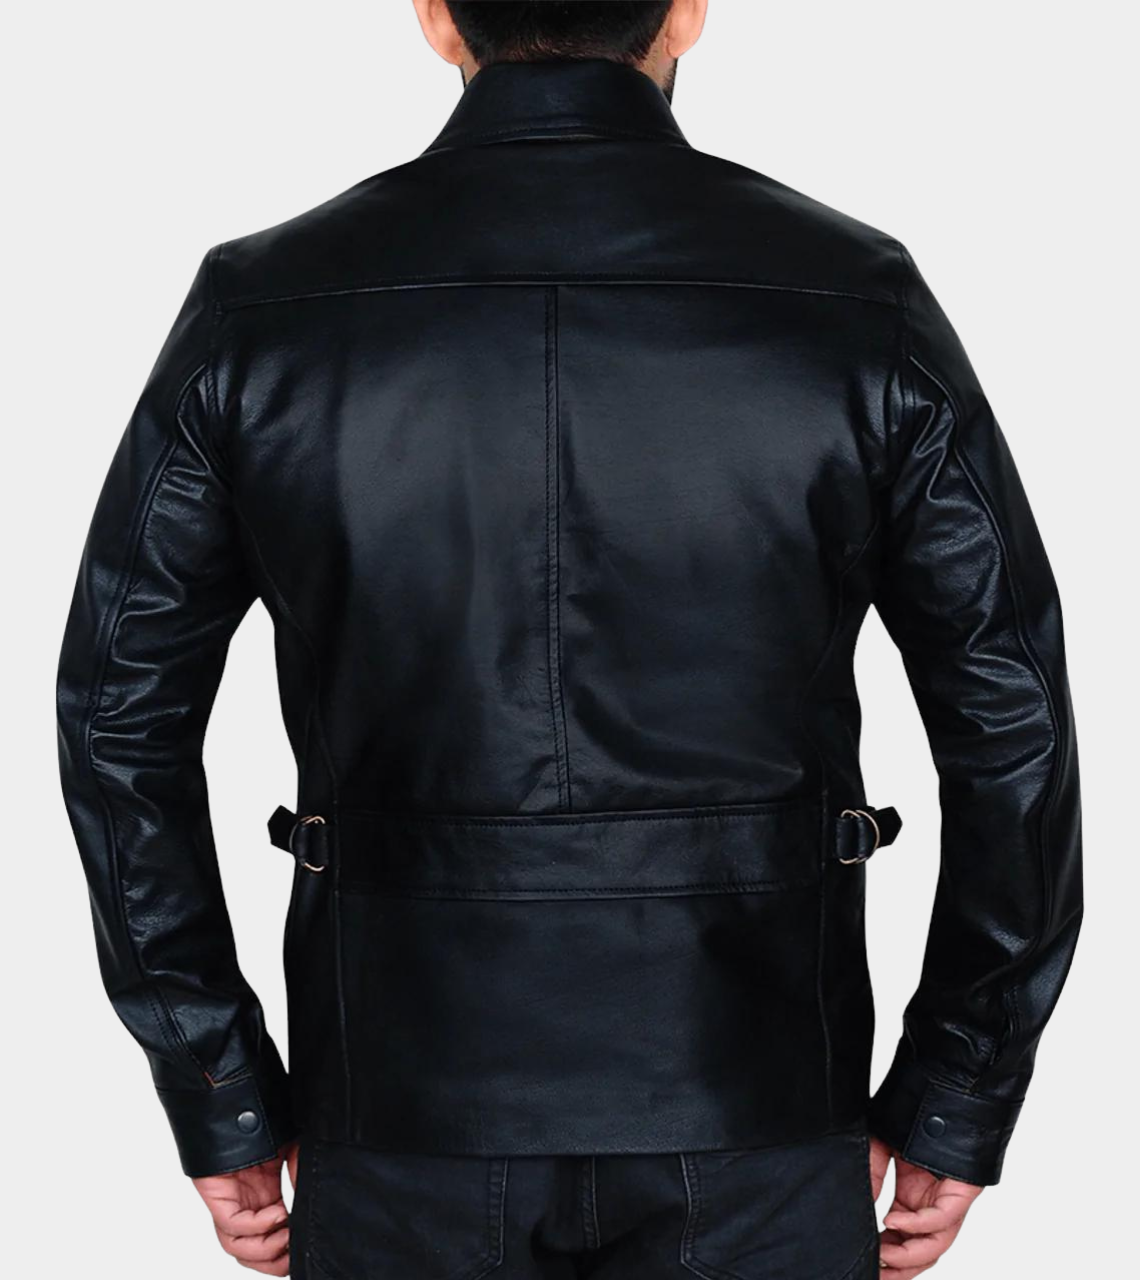  Men's Biker Leather Jacket Back